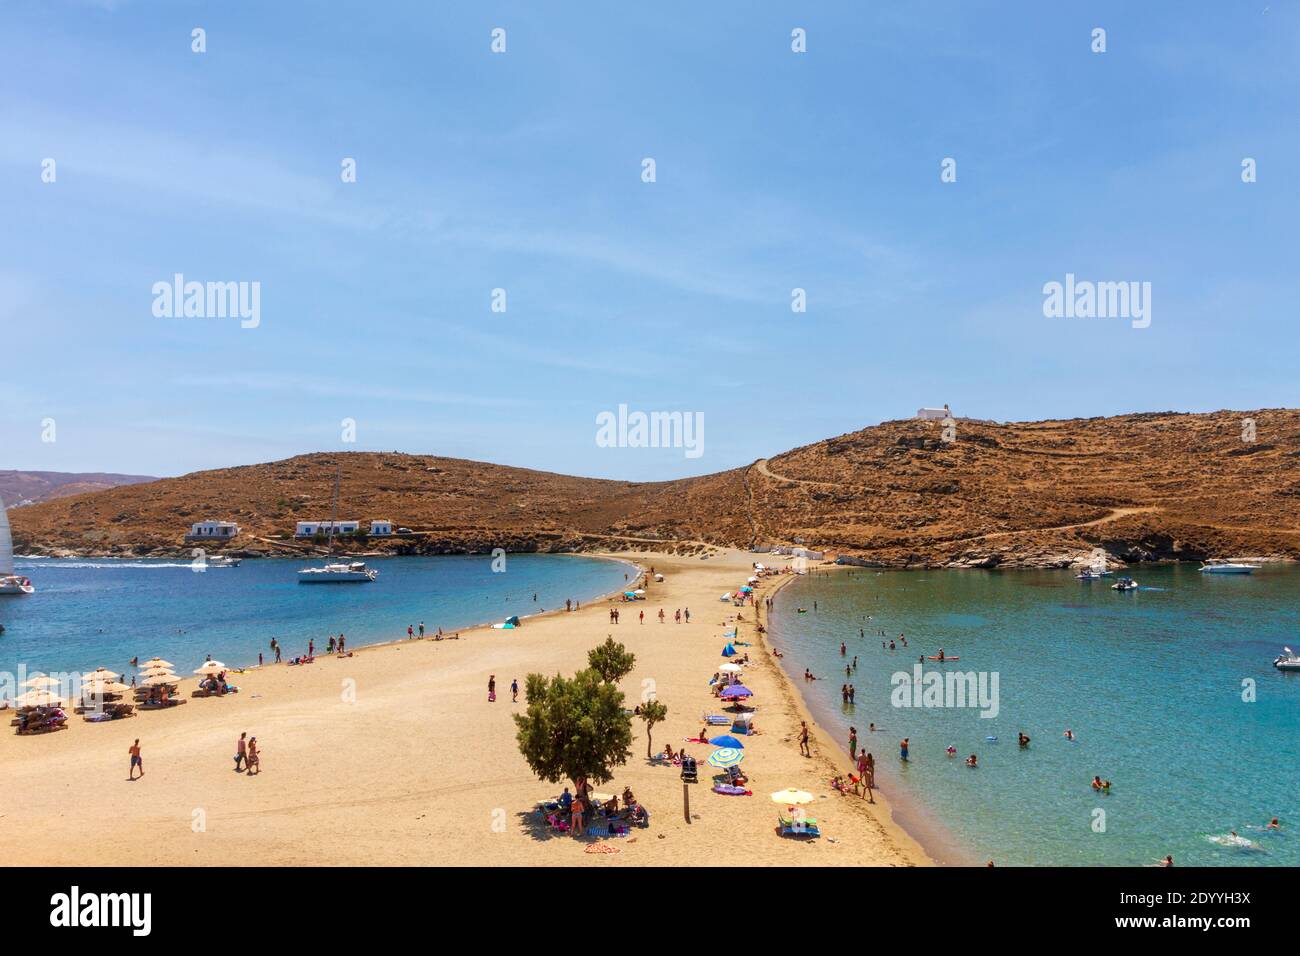 Kolona, der beliebteste Strand auf Kythnos Insel, ein kleiner Sandkorridor, der zwei Strände schafft, geeignet für windige Tage, auf den Kykladen Inseln, Griechenland Stockfoto